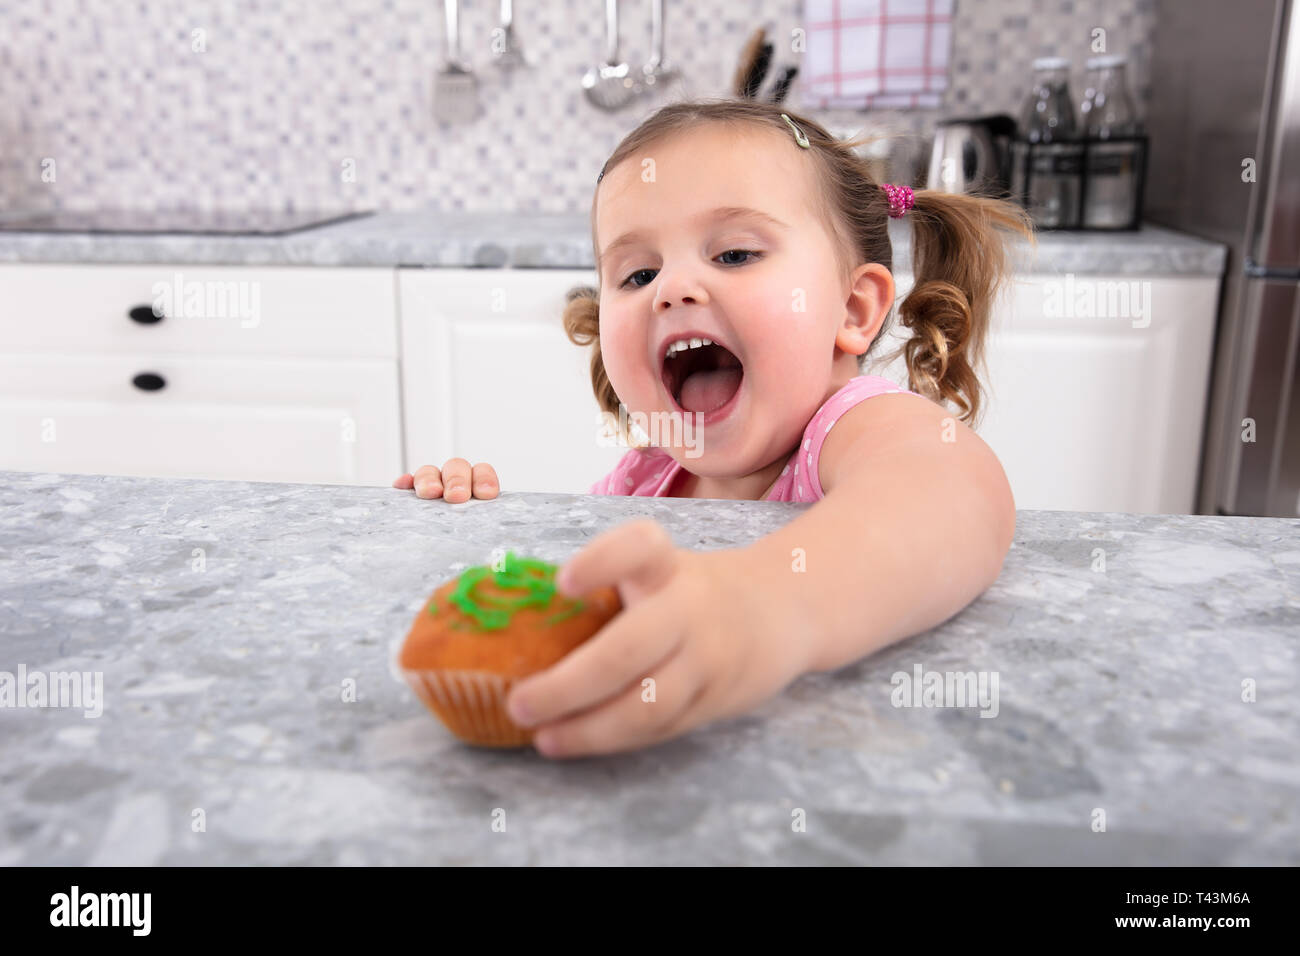 Lächelnd Cute Girl's Hand erreichen Für Cupcake auf den Küchentisch Stockfoto